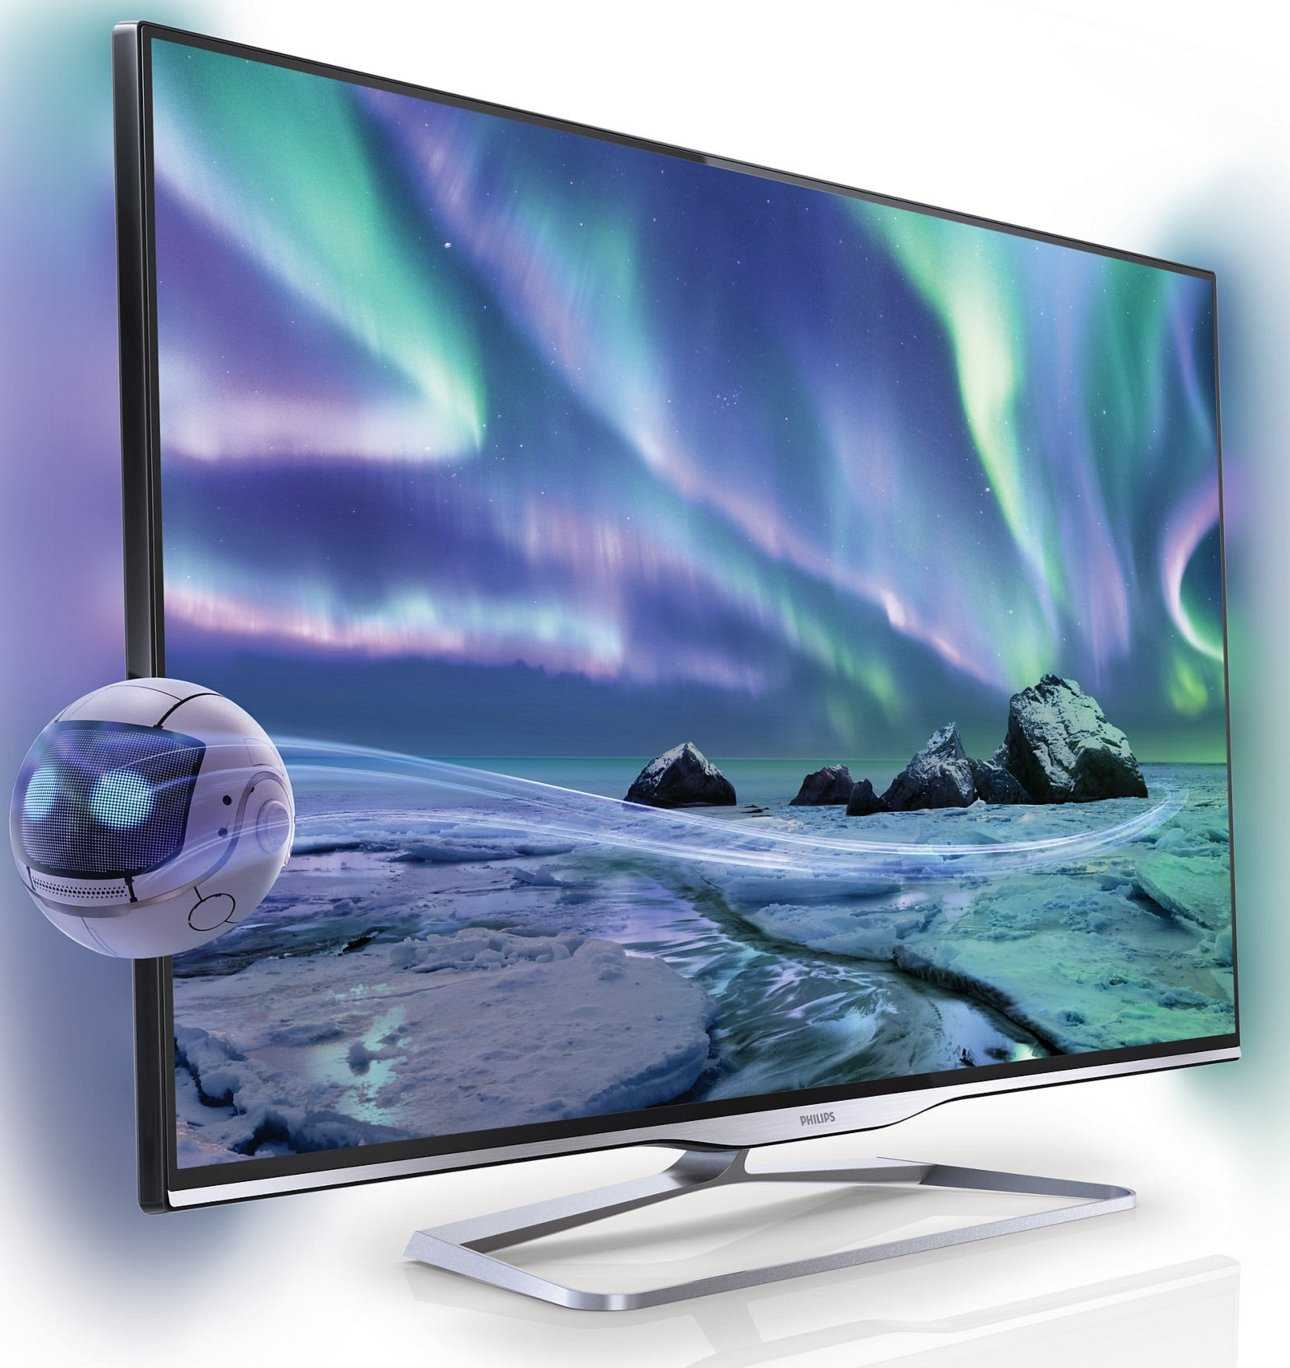 Philips 50pfl5008h - купить , скидки, цена, отзывы, обзор, характеристики - телевизоры